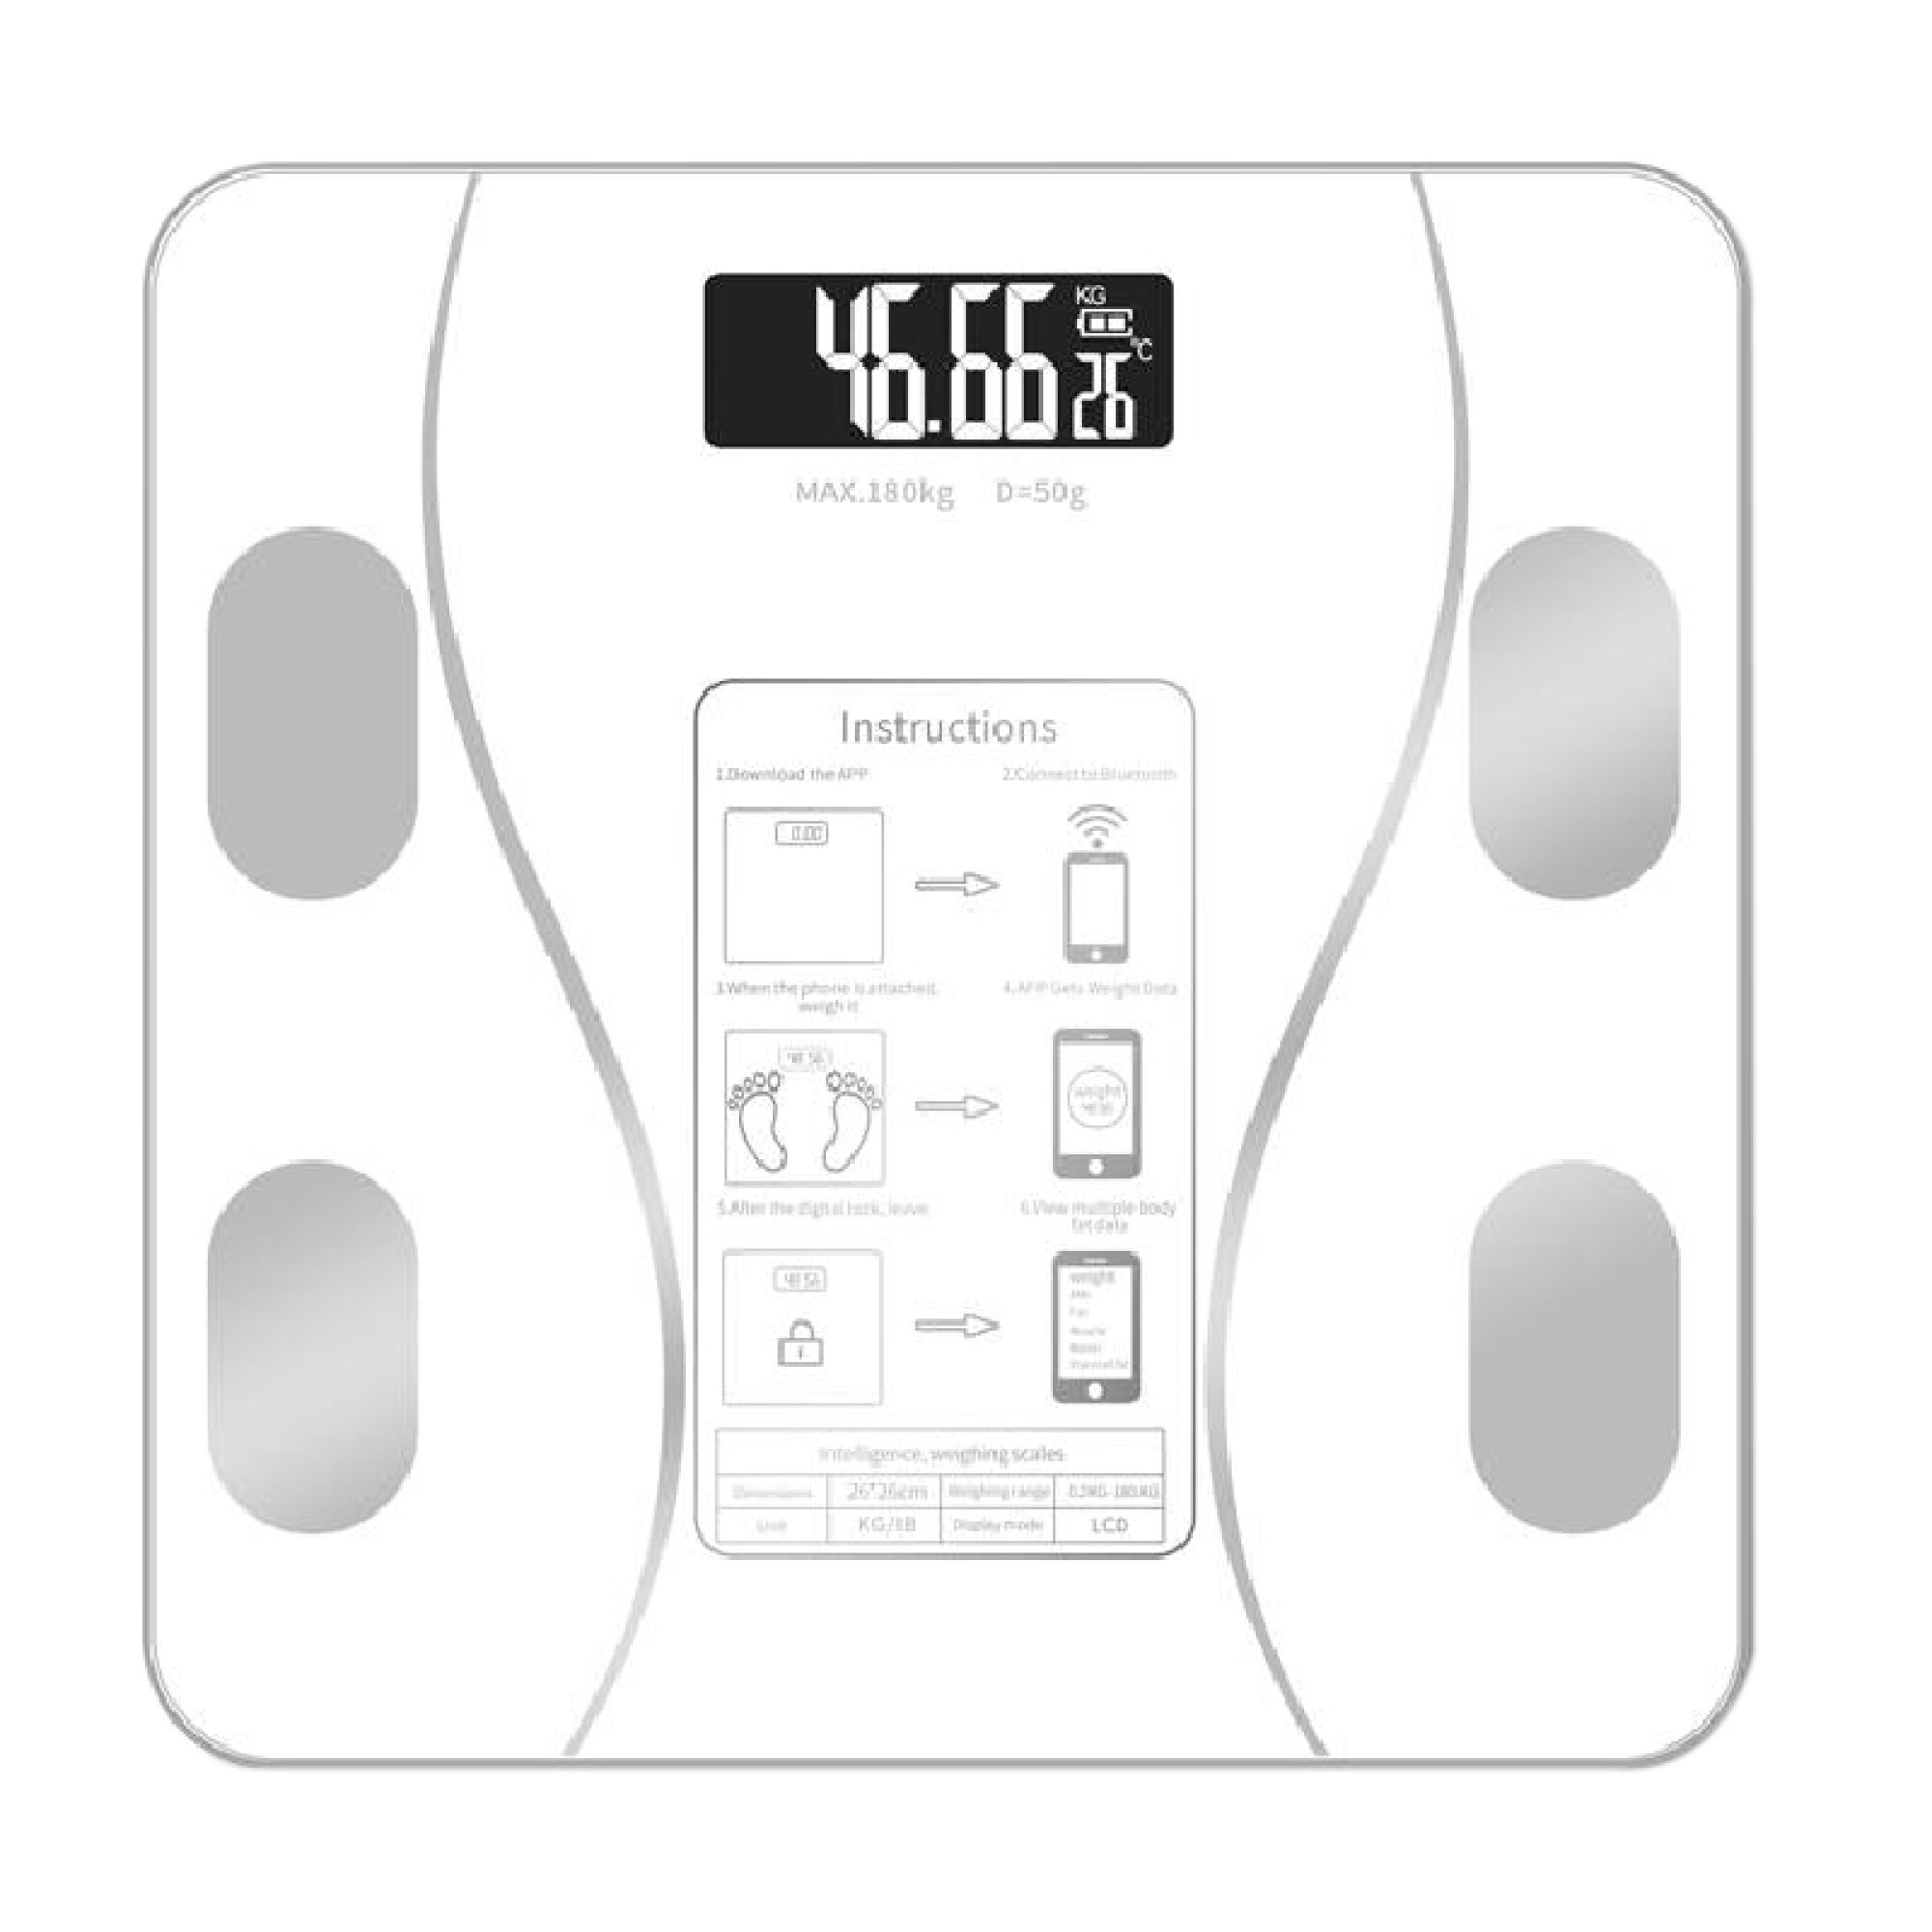 Báscula inteligente Bluetooth, monitor digital de peso y grasa corporal,  analizador de composición corporal de 11 categorías en profundidad con